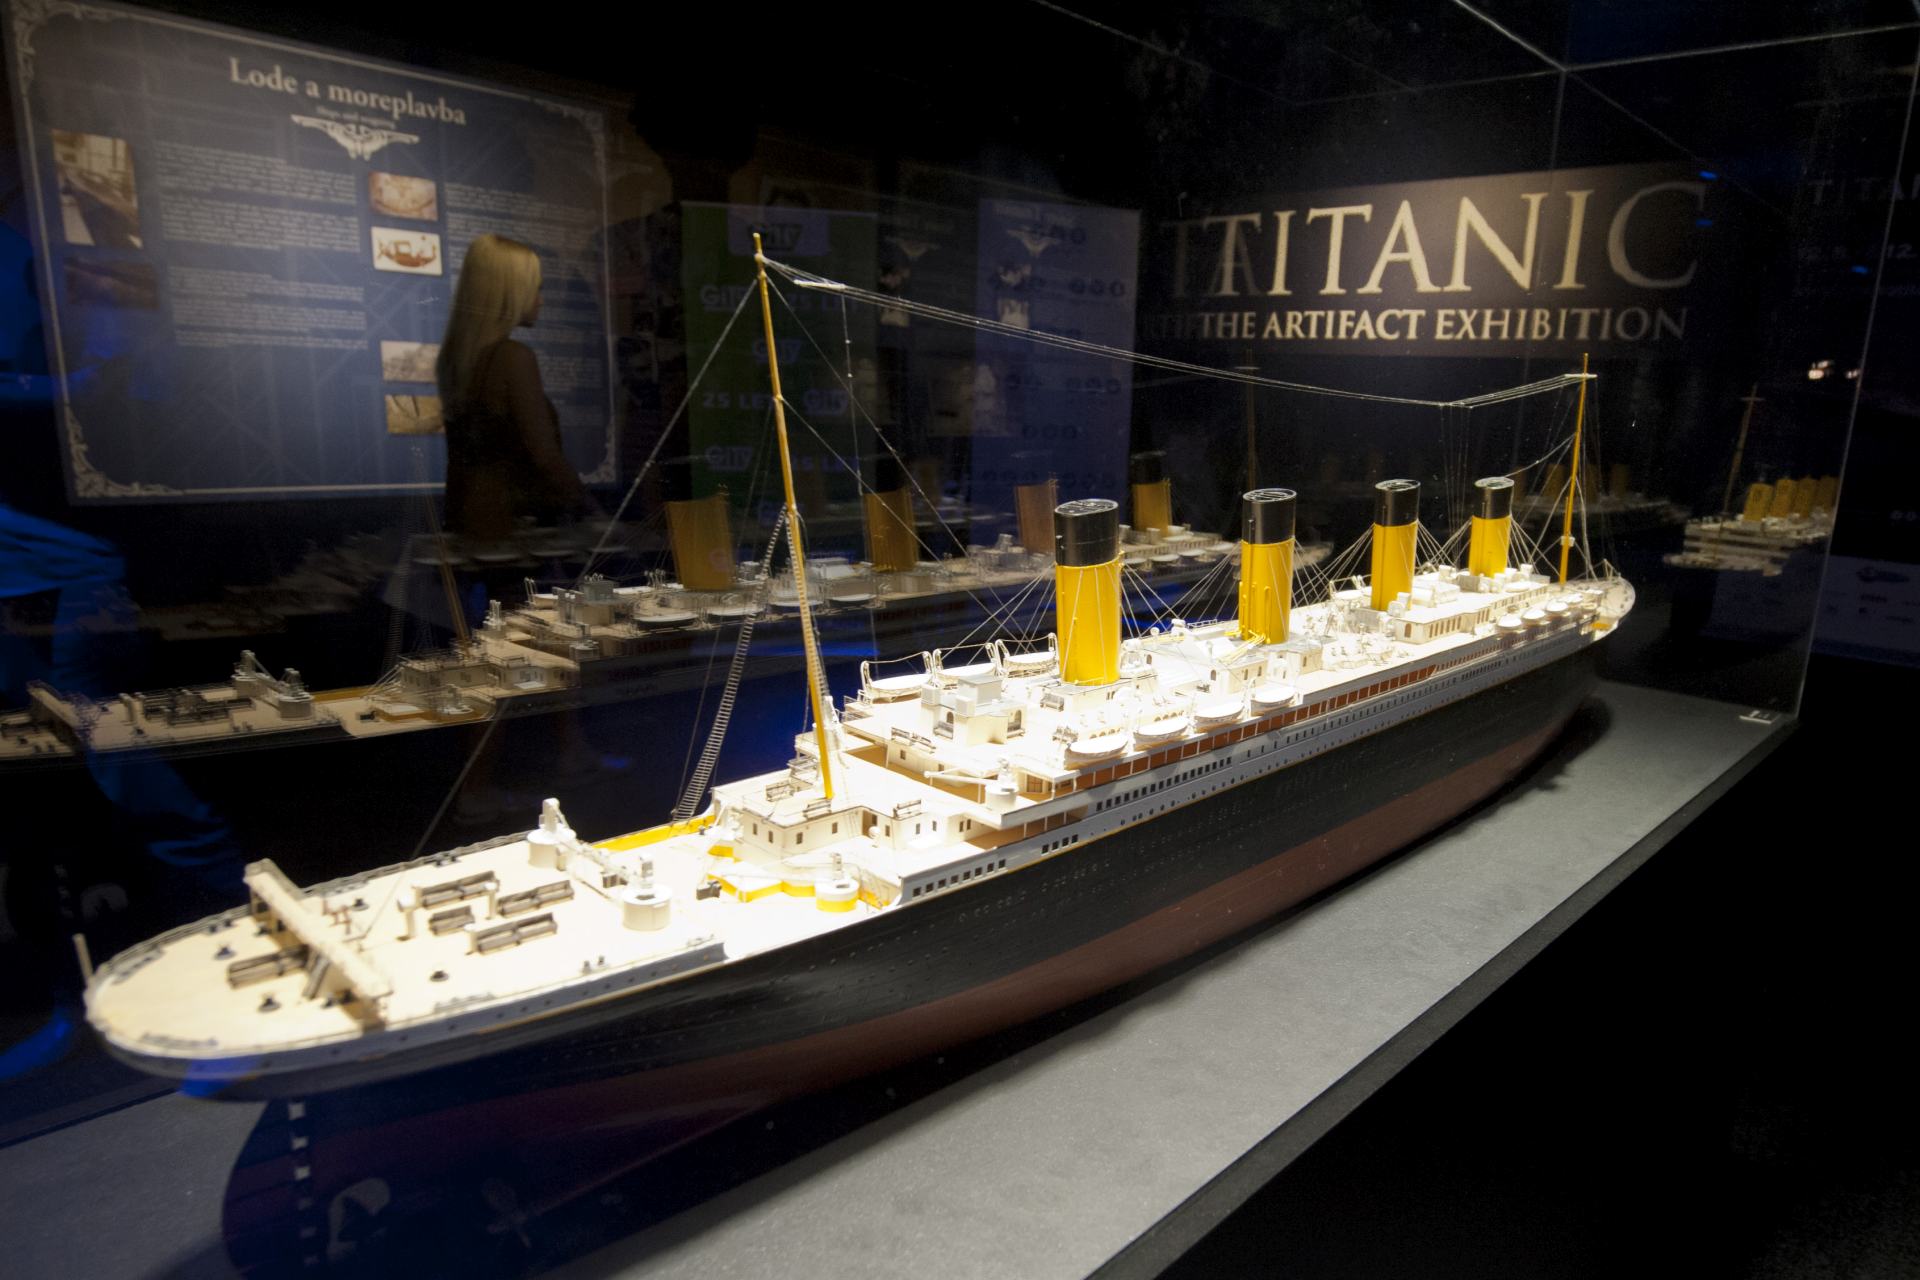  Austrálie Británie USA zajímavosti památky lodní Titanic 